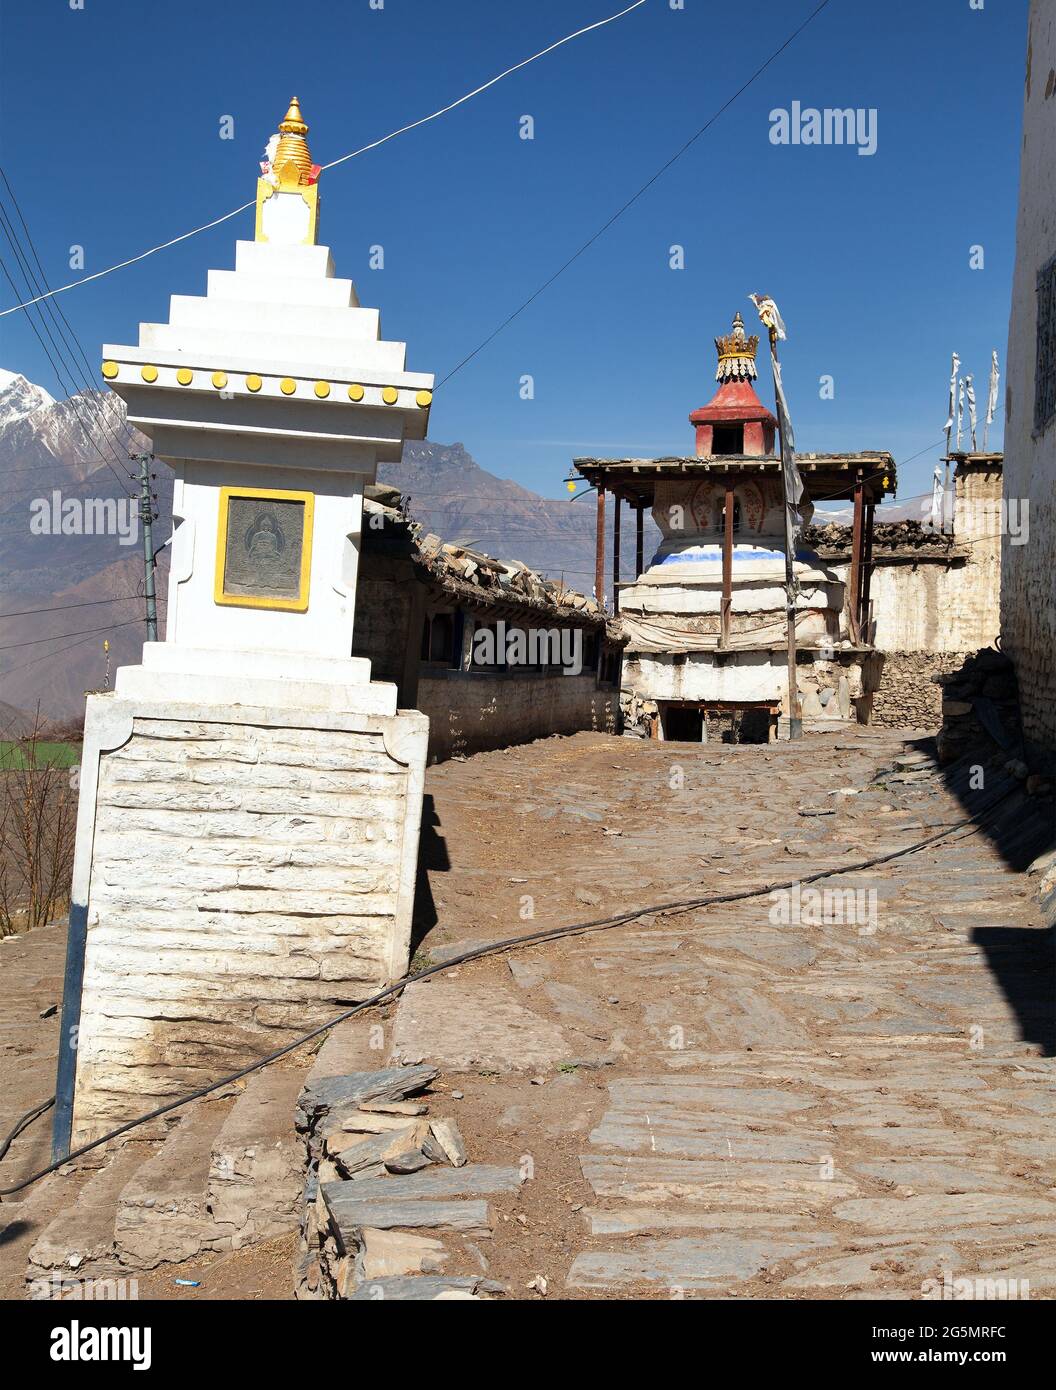 Village de Jharkot, l'un des meilleurs villages de la route de randonnée du circuit Annapurna, montagnes de l'Himalaya du Népal Banque D'Images